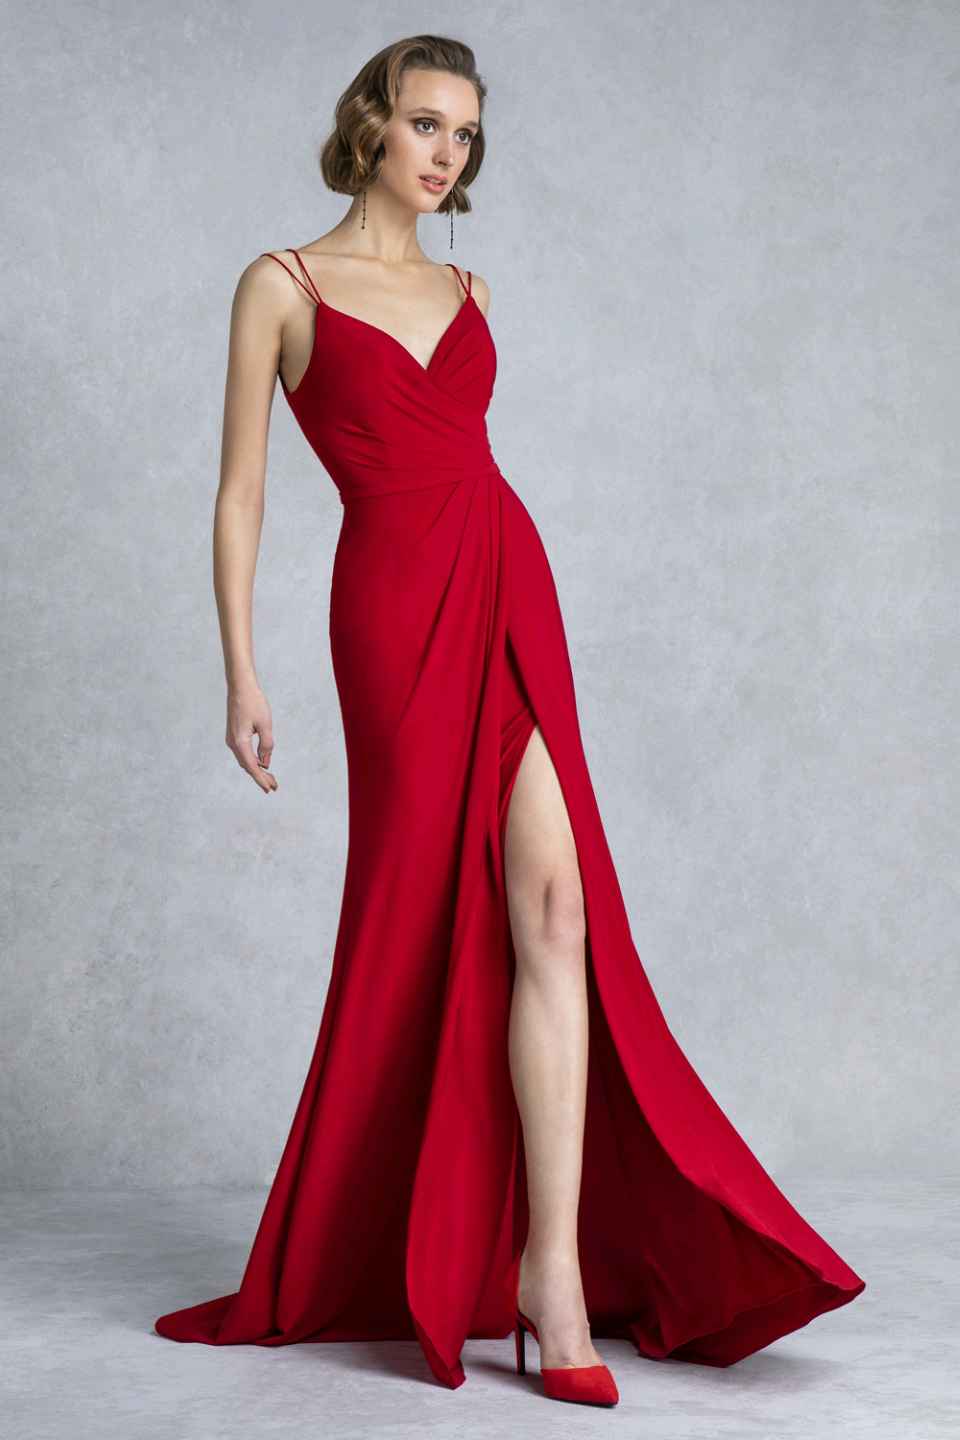 Φόρεμα μακρύ ντραπέ με σκίσιμο, διαθέσιμο σε κόκκινο και ρουά.